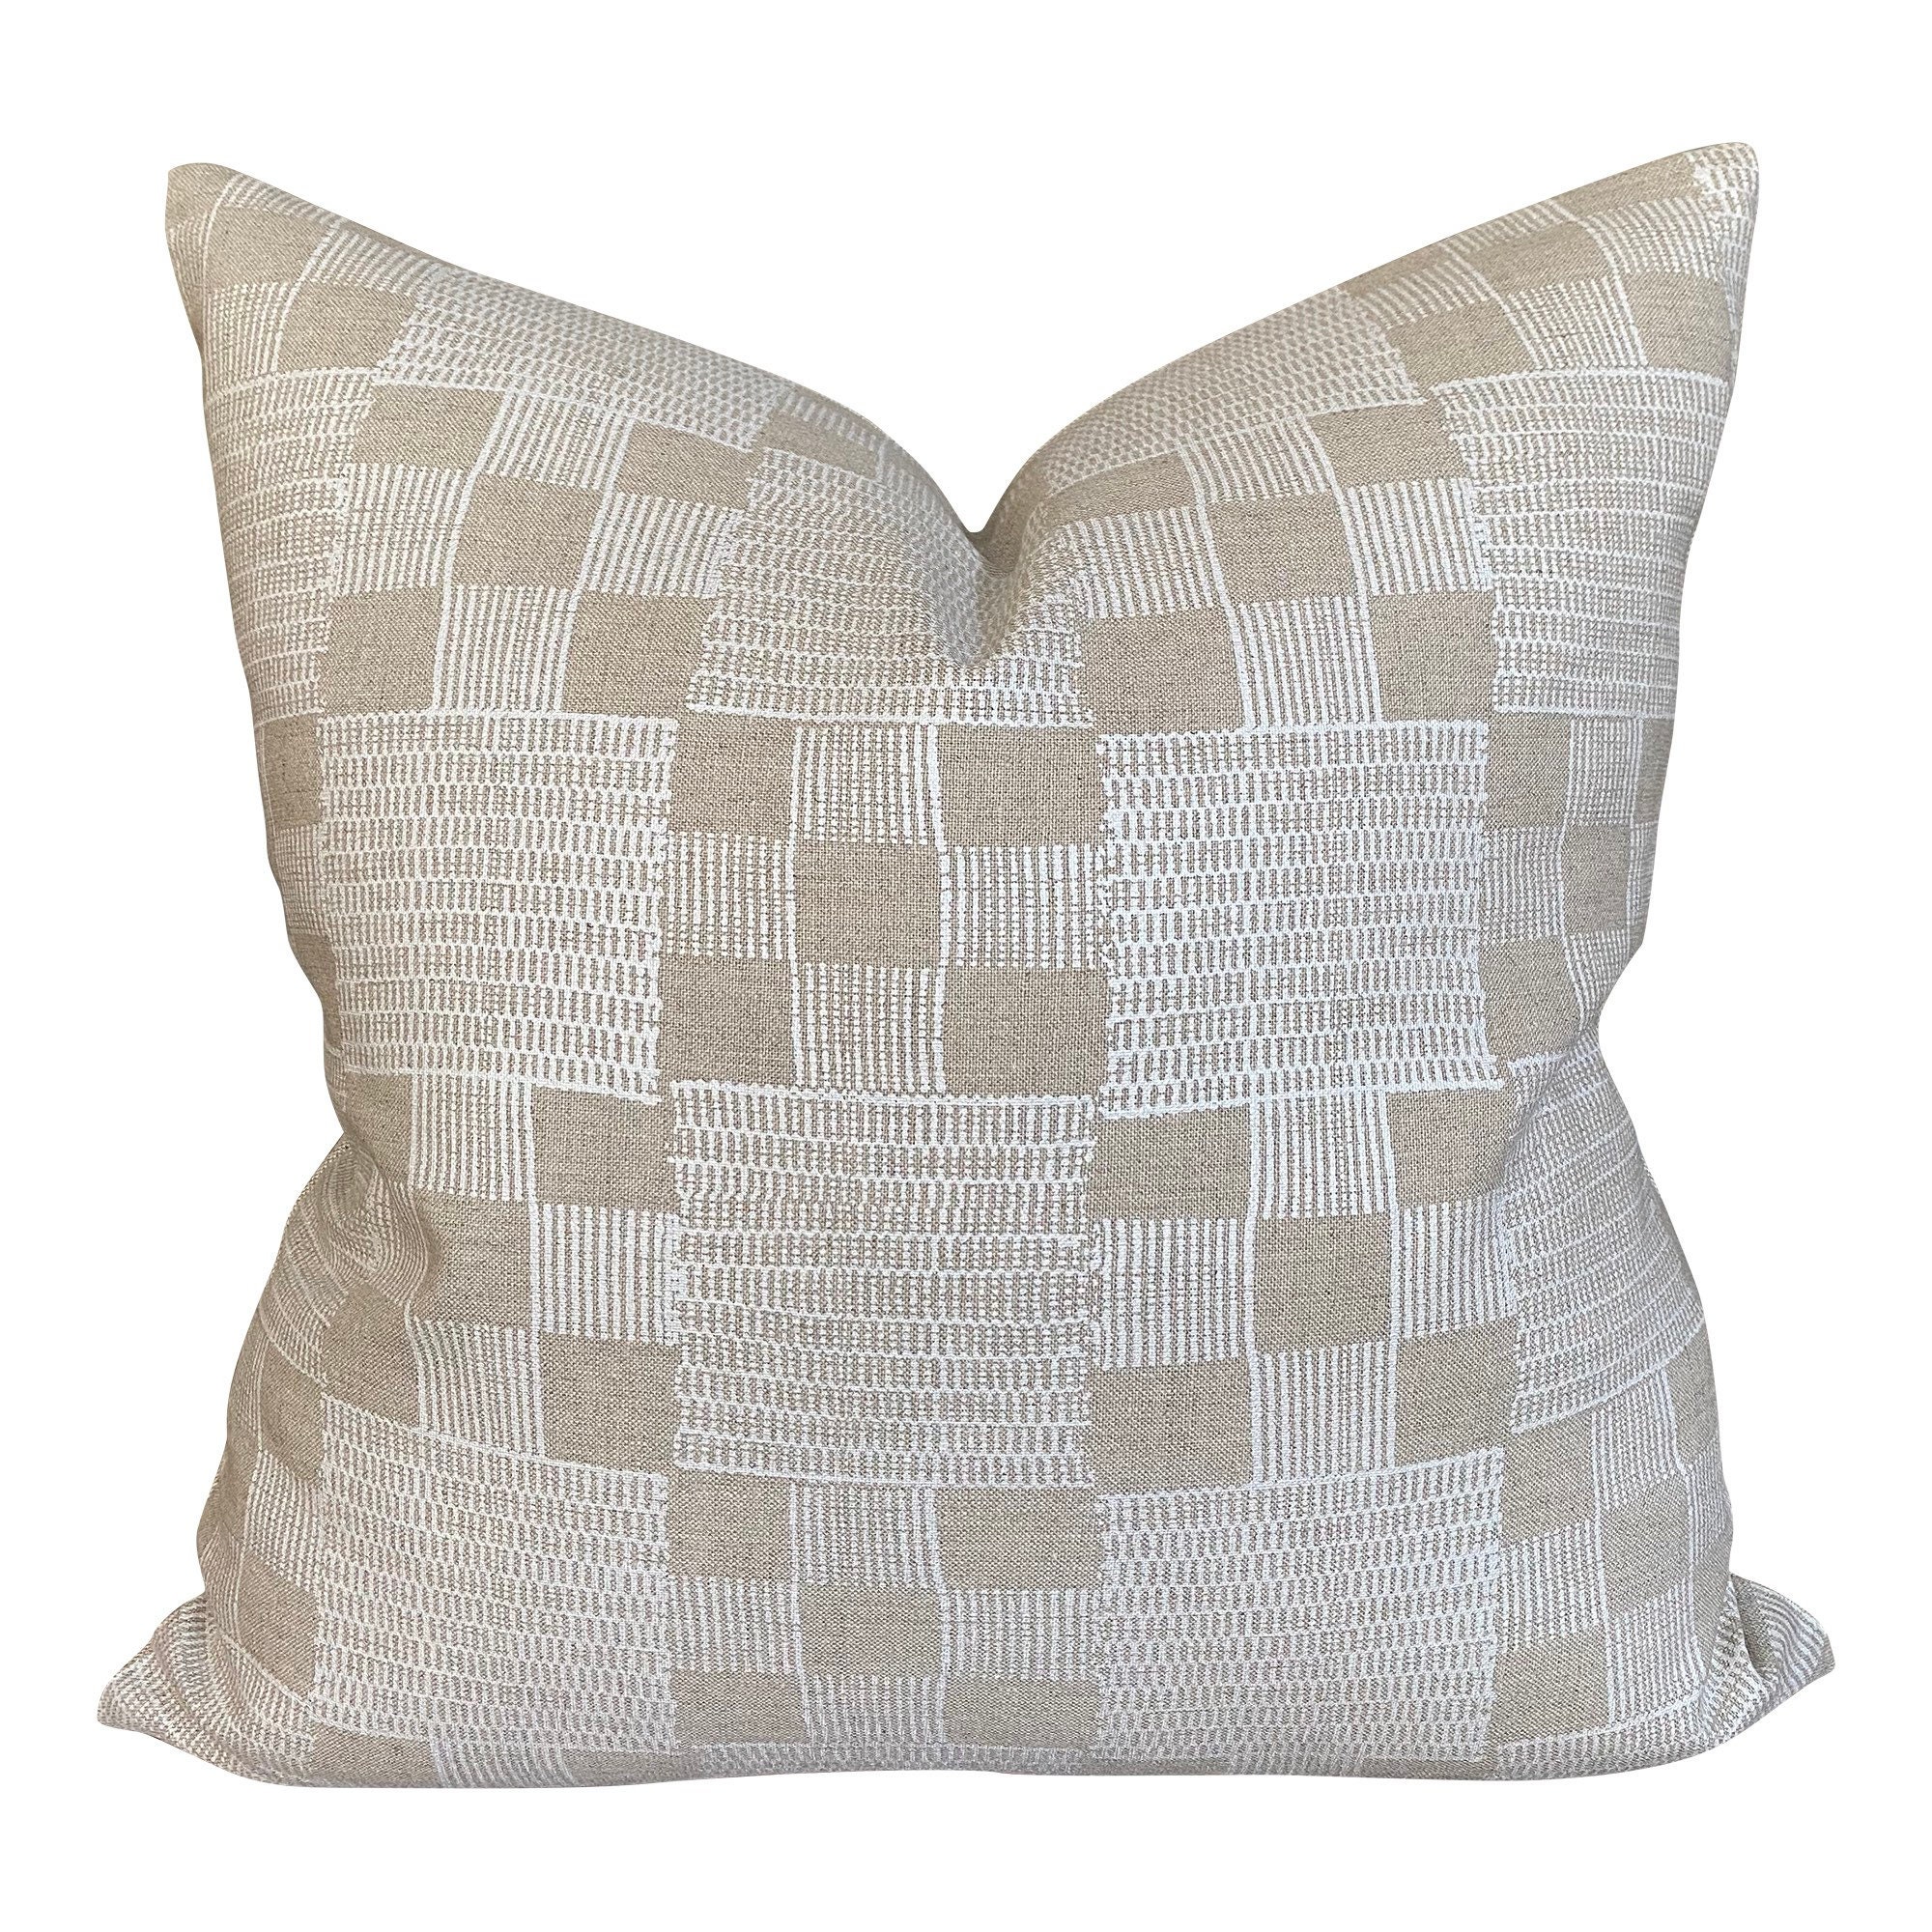 Designer Jennifer Shorto Petrel in White Pillow Cover // 